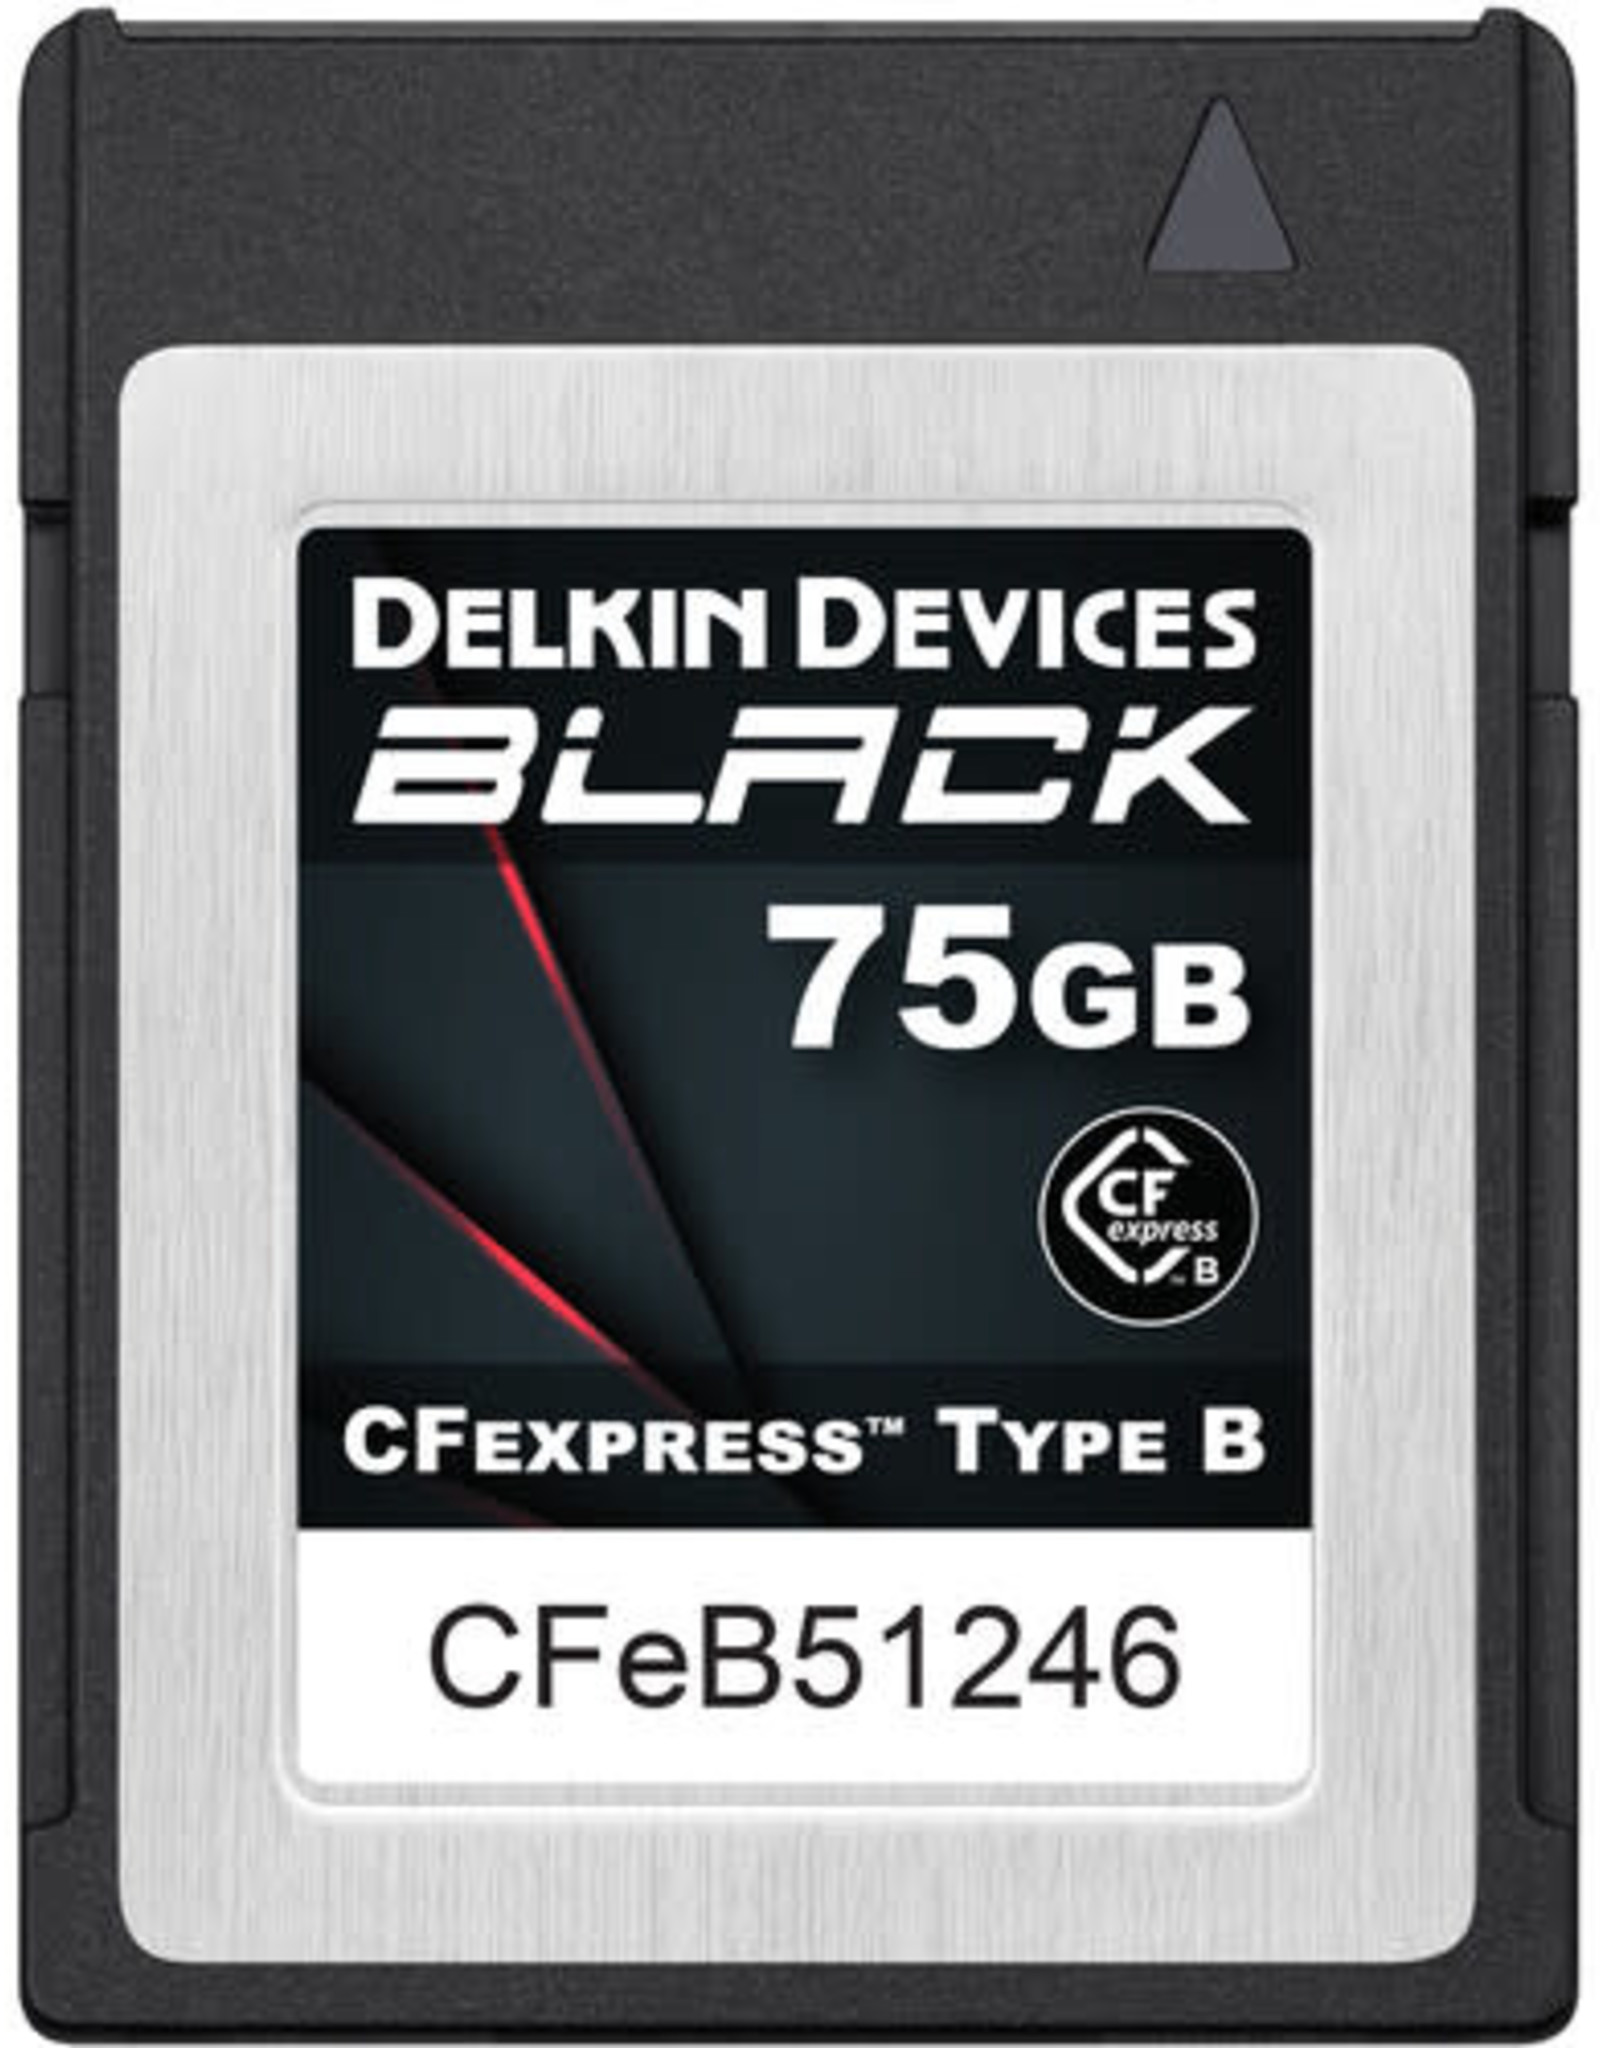 Delkin Devices Delkin Black CFExpress Type B